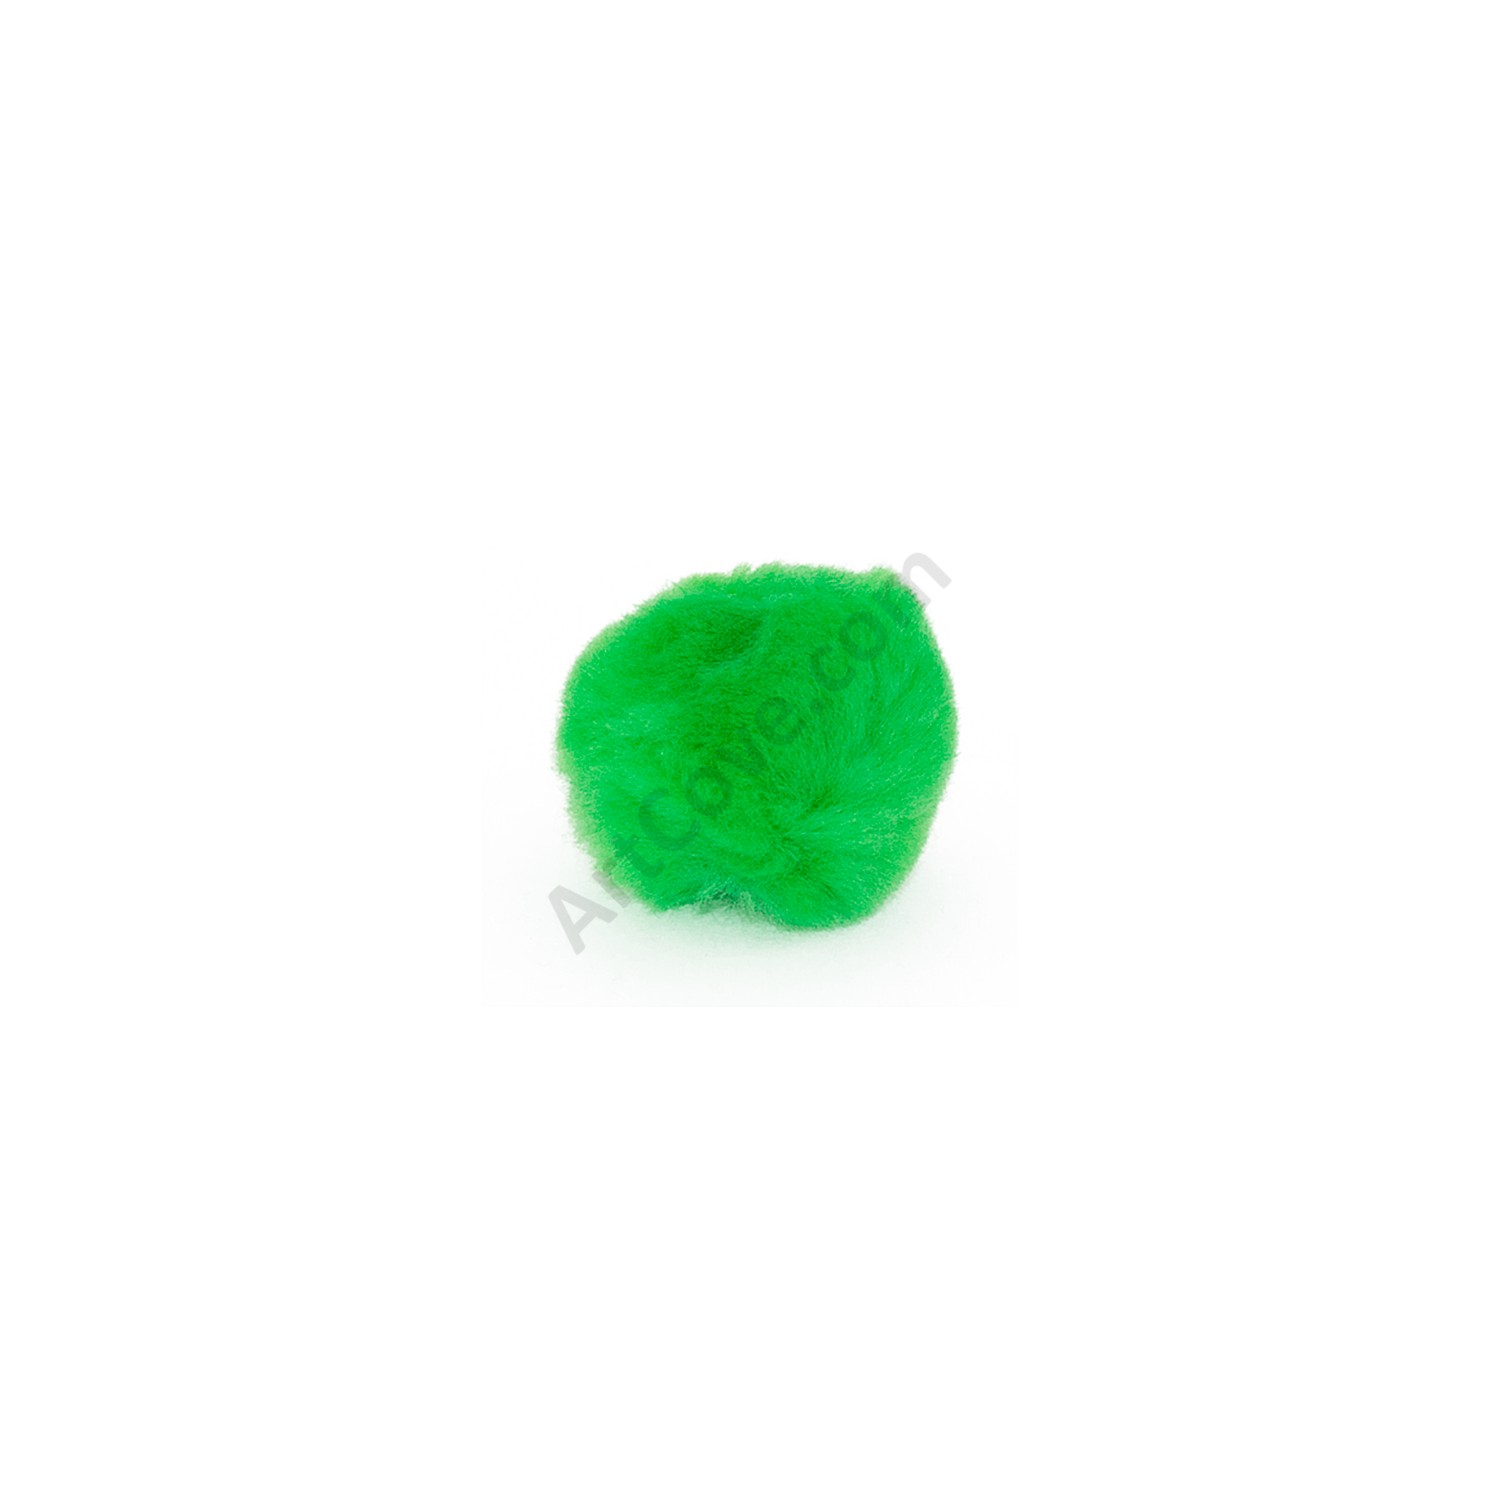 1-1/2 inch Multicolored Craft Pom Poms 50 Pieces Pom Pom Balls